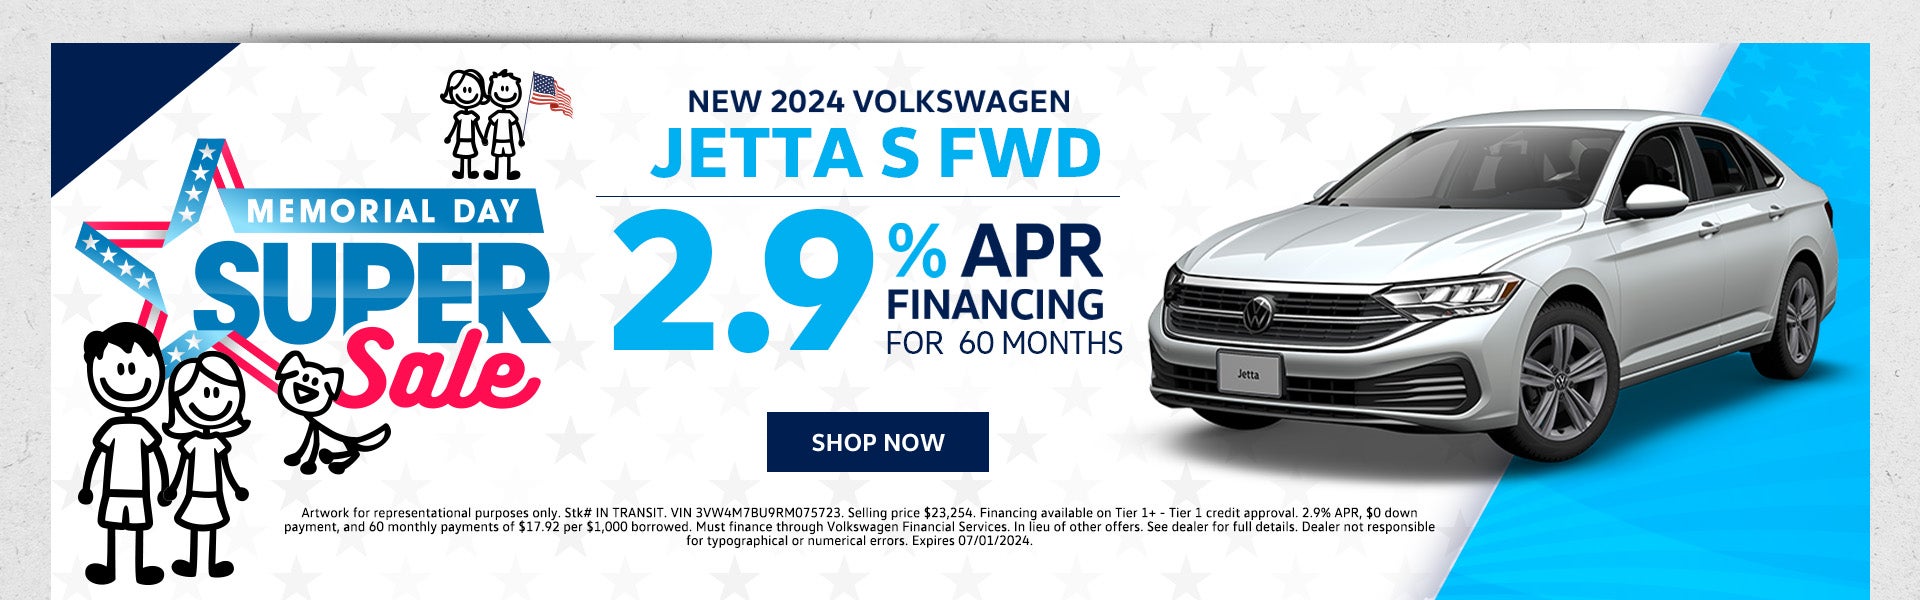 New 2024 VW Jetta S FWD